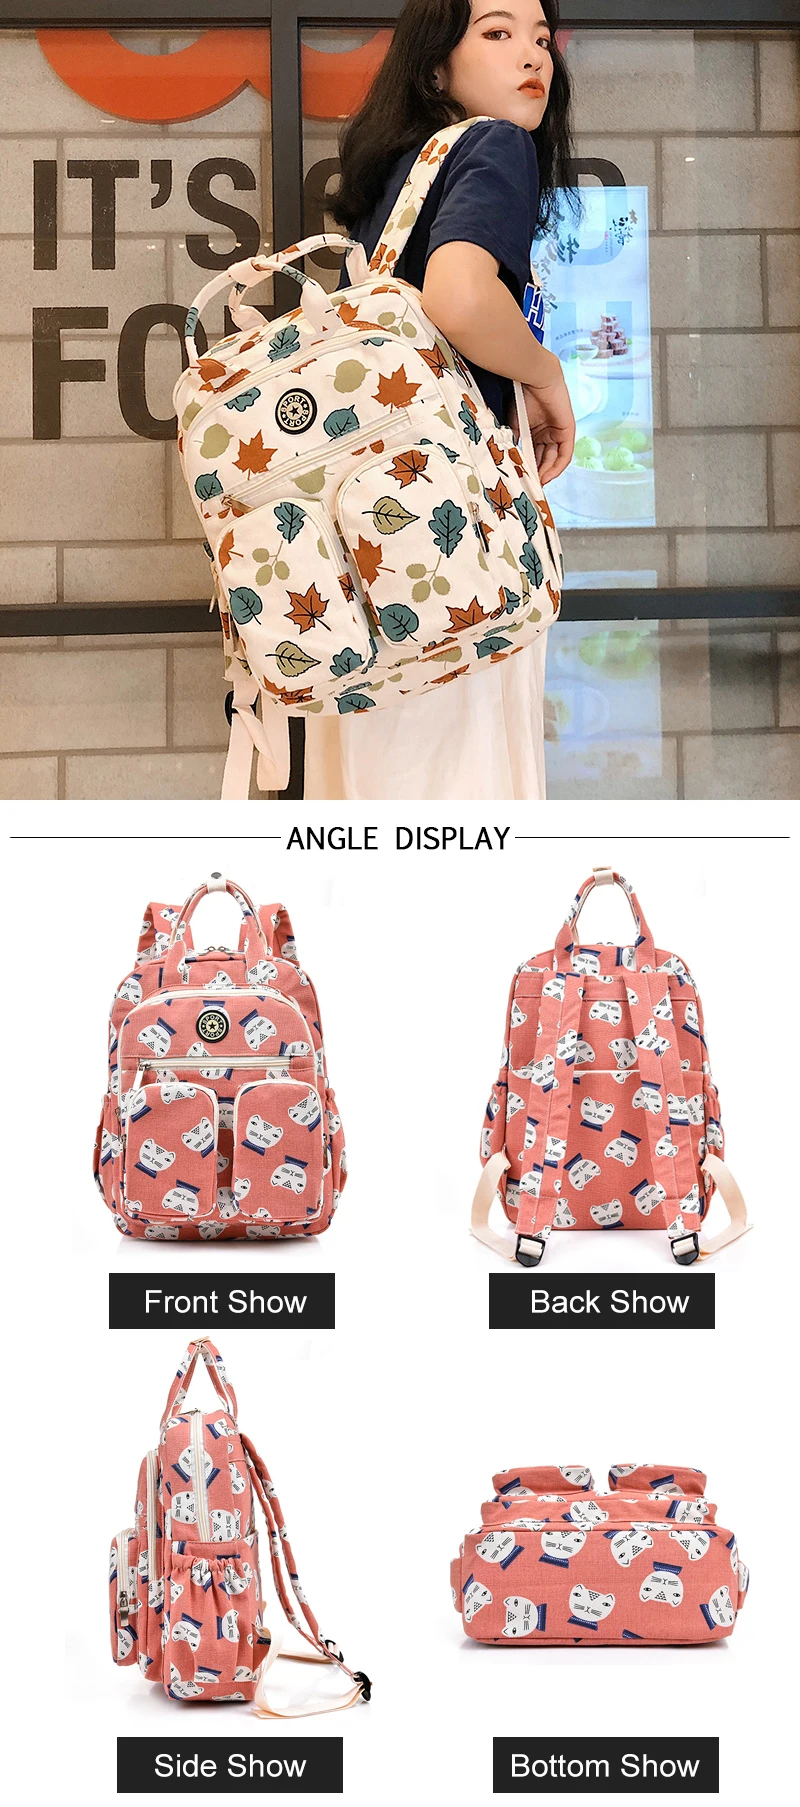 Рюкзак с защитой от кражи, водонепроницаемый рюкзак для ноутбука, женские школьные рюкзаки, рюкзаки для путешествий, повседневная женская сумка на плечо, Mochilas Mujer, многофункциональный